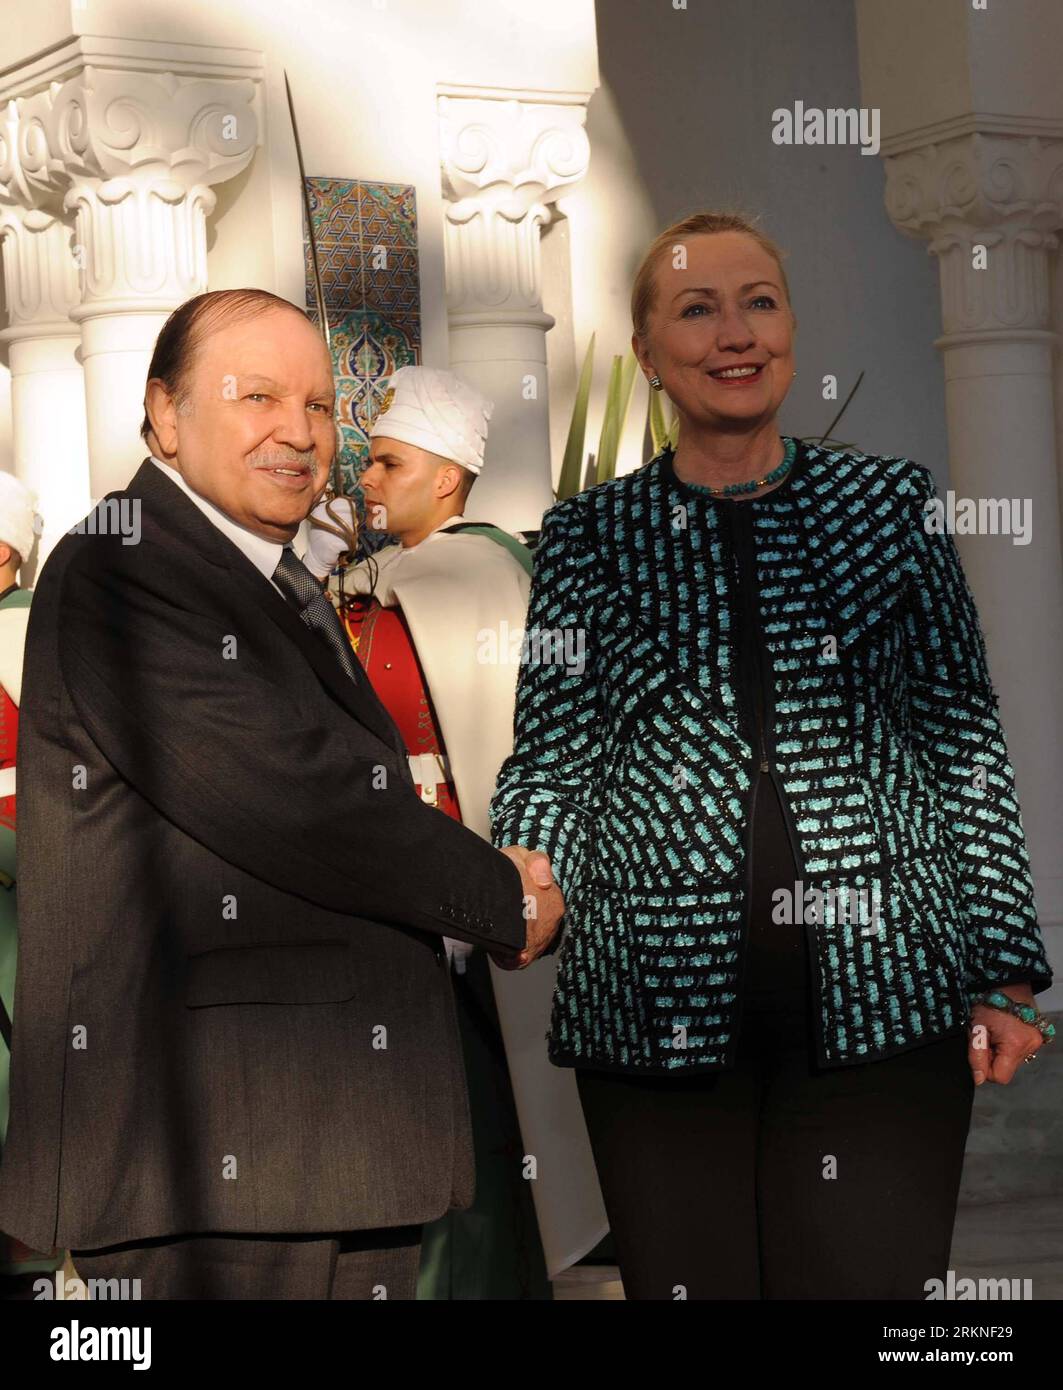 Bildnummer : 57108129 Datum : 25.02.2012 Copyright : imago/Xinhua (120225) -- ALGER, 25 février 2012 (Xinhua) -- la Secrétaire d'État américaine Hillary Clinton (à droite) est accueillie par le président algérien Abdelaziz Bouteflika (à gauche) à la présidence à Alger, le 25 février 2012. Hillary Clinton a démenti samedi les informations selon lesquelles les États-Unis auraient apporté un soutien financier à certains partis islamistes en Algérie, qui tiendront bientôt ses élections législatives. (Xinhua/Mohamed Kadri) (zx) ALGERIA-ALGER-CLINTON-VISIT PUBLICATIONxNOTxINxCHN People Politik xdp x0x 2012 hoch premiumd 57108129 DAT Banque D'Images